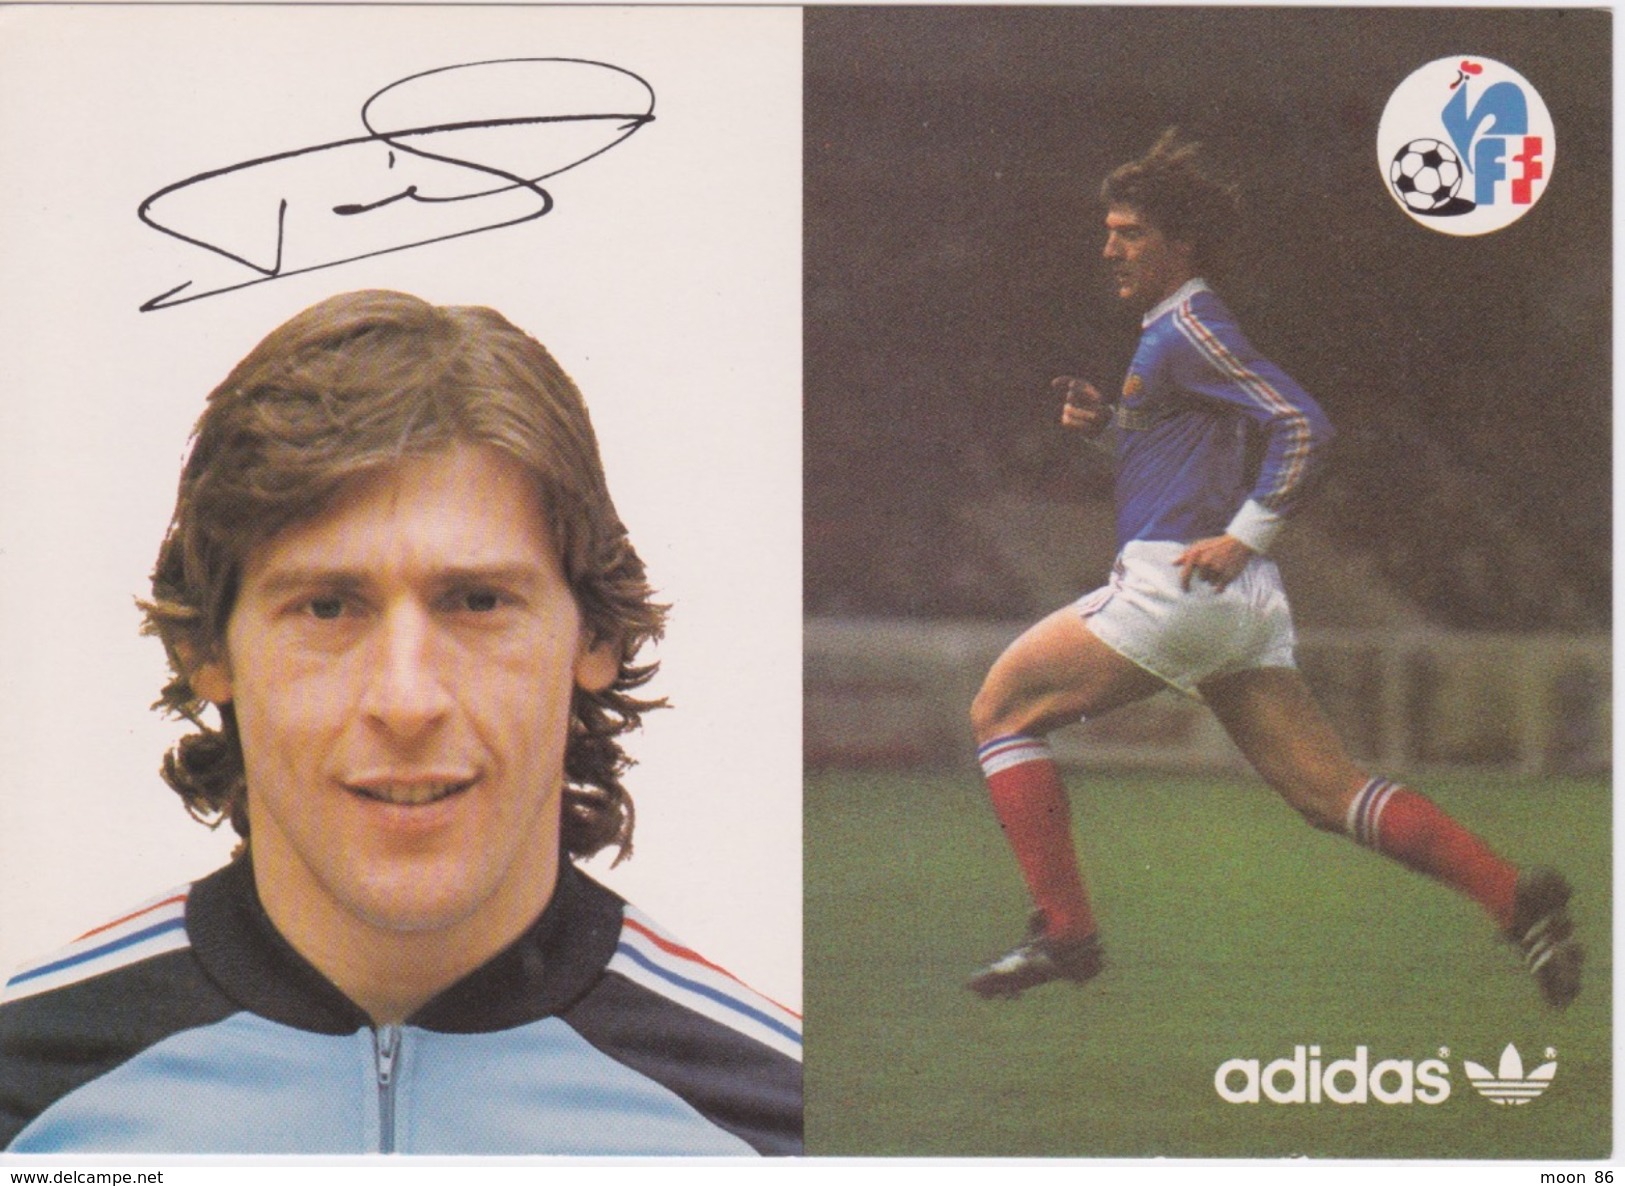 13 cartes postale - Equipe de France   FOOTBALL 1978 - CARTE ORIGINALE DE LA FFF & ADIDAS